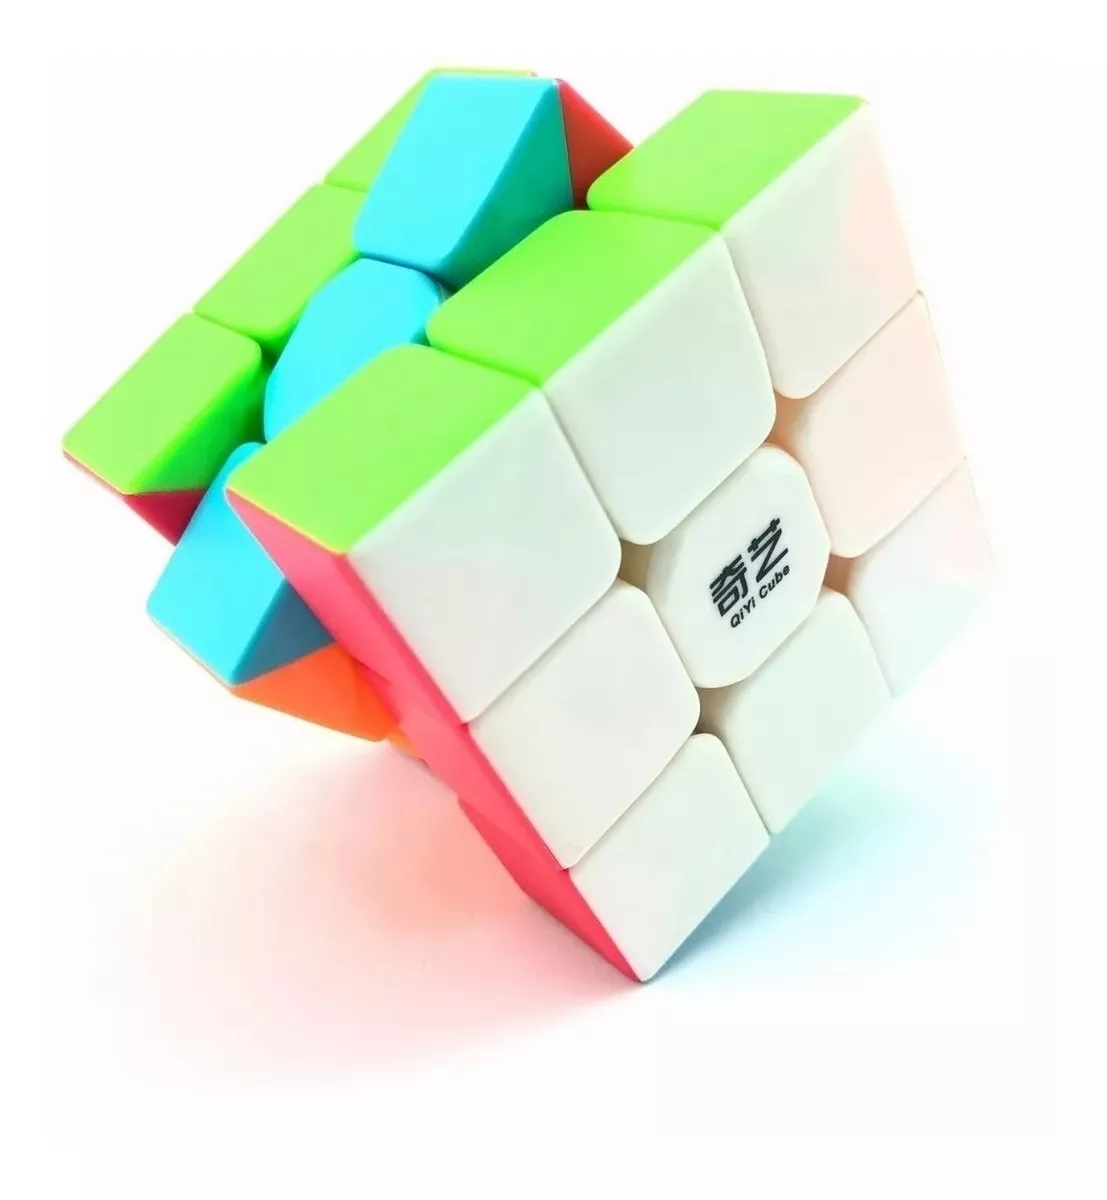 Cubo Rubik 3x3 Qiyi Warrior W Stickerless Lubricado